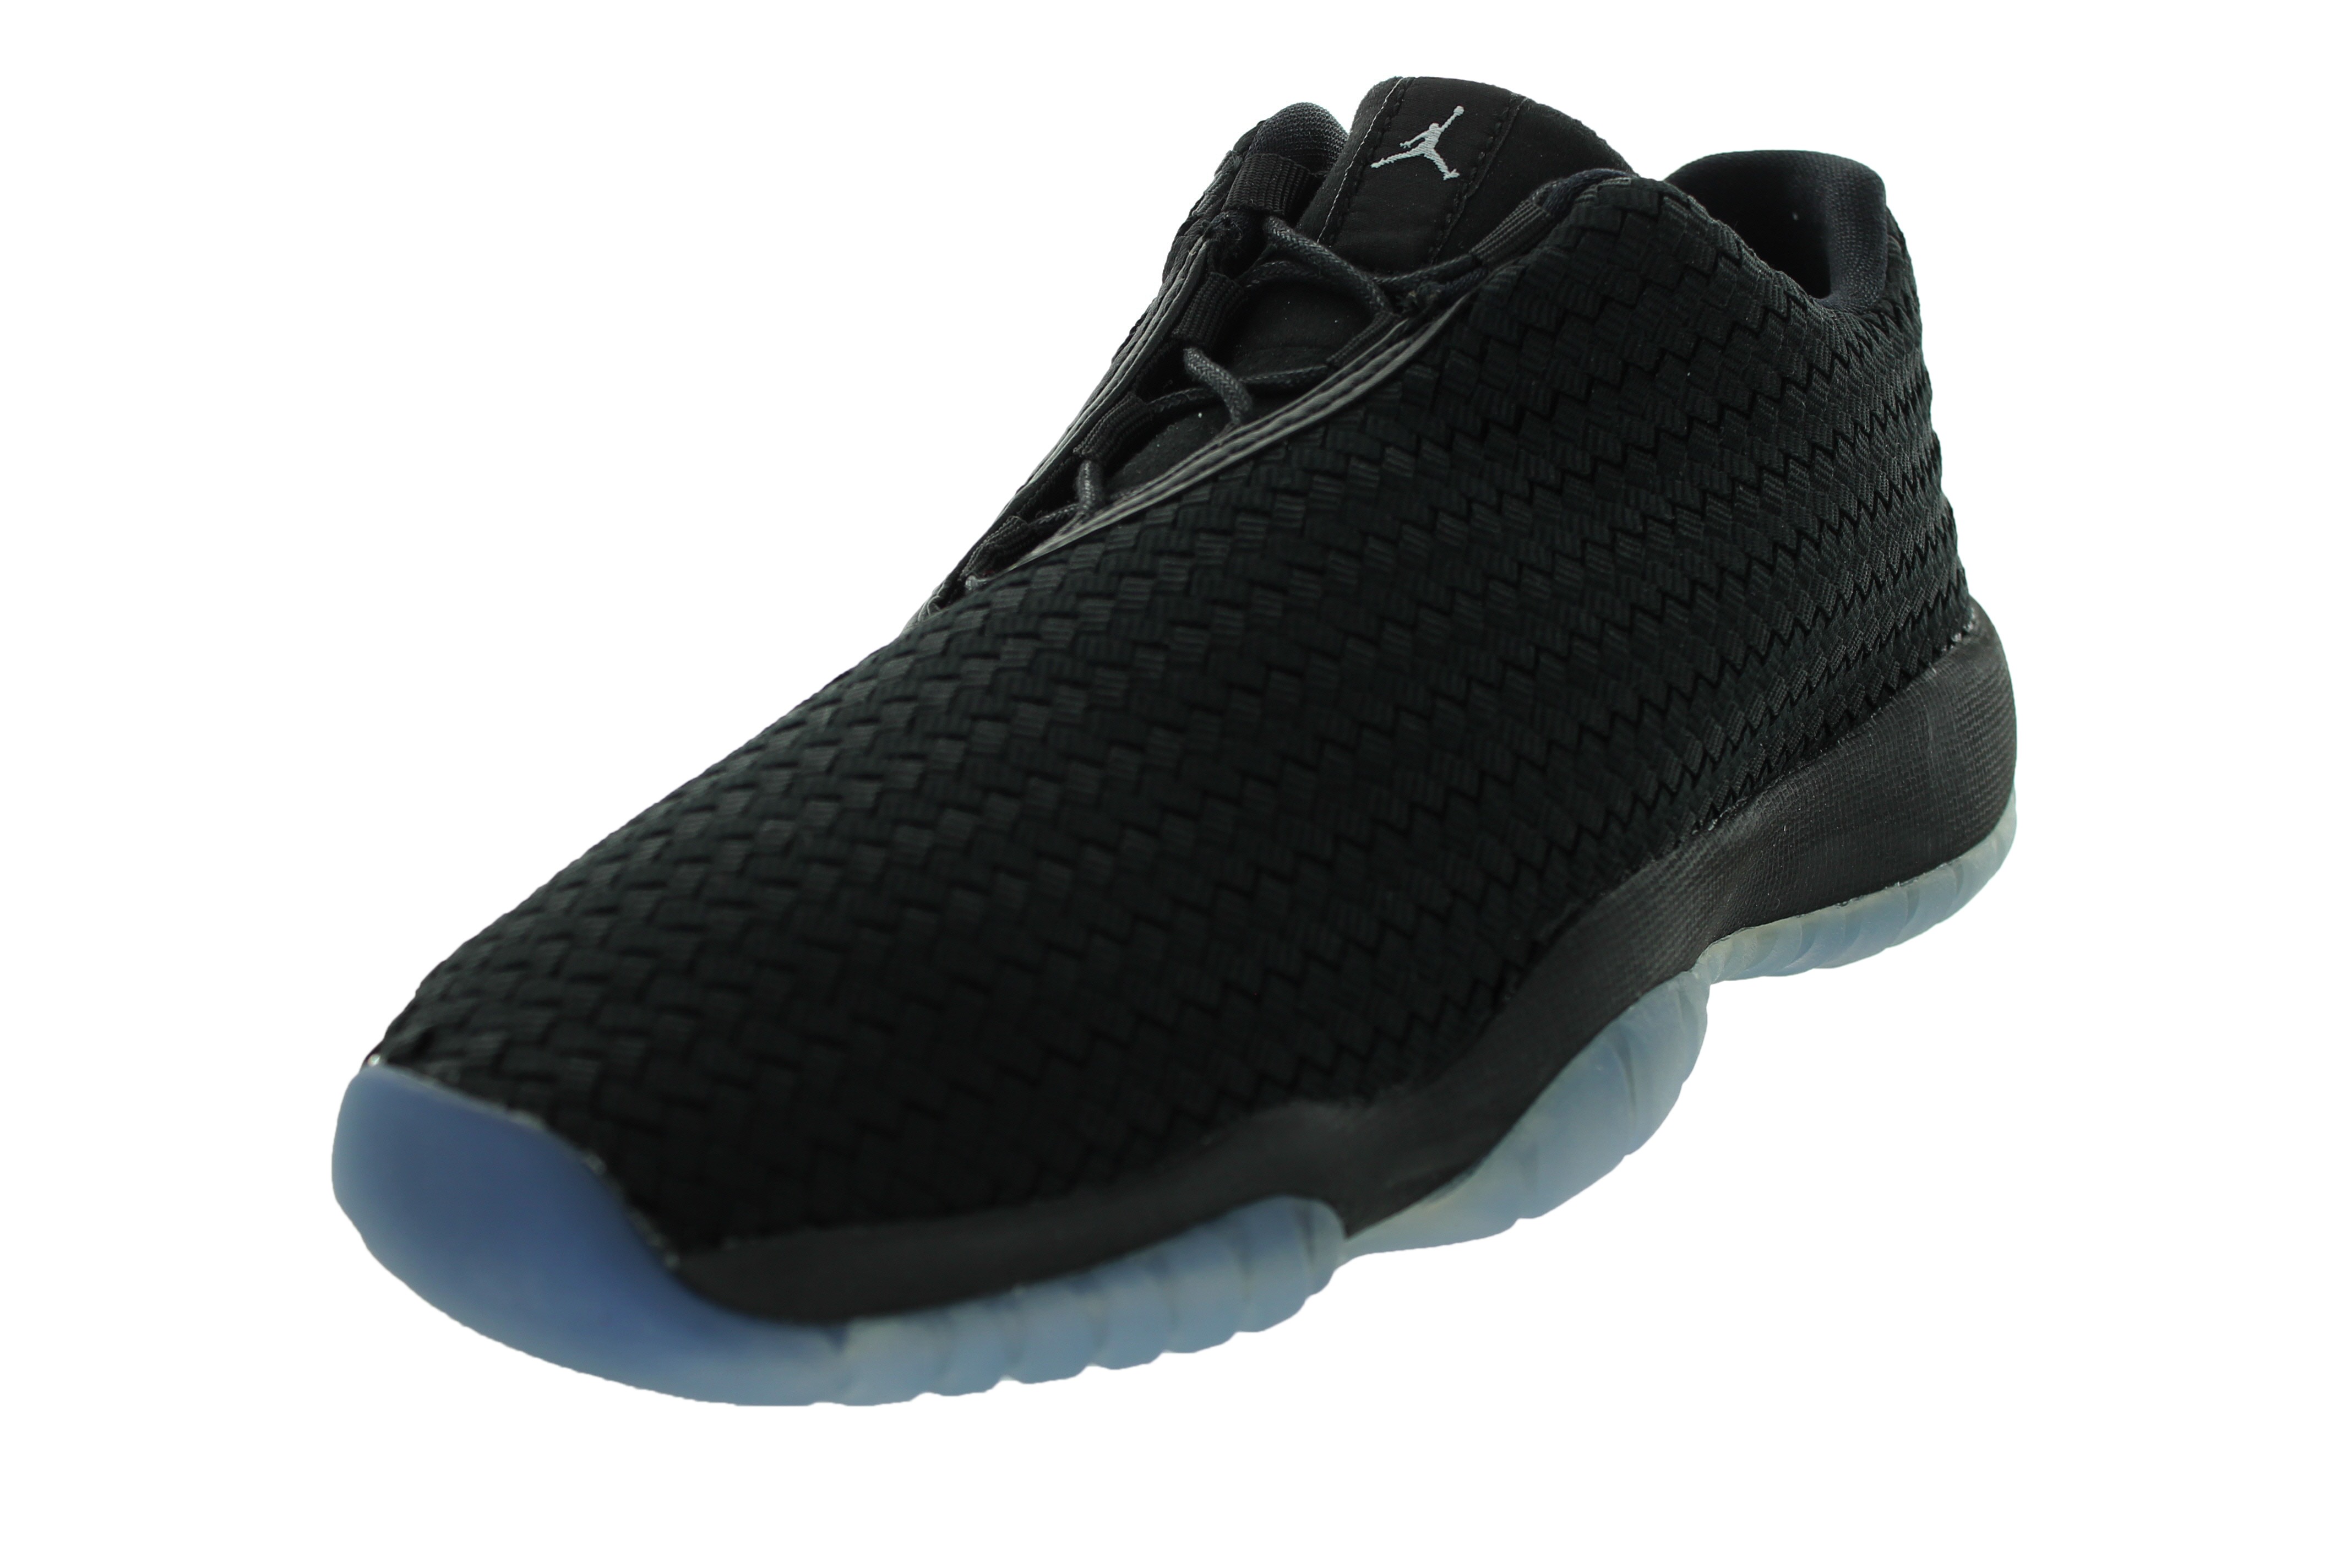 Air Jordan Future Baskets, 9084 Enfant Nike Air Jordan Future Low Bg Chaussures de basket (Noir/métallique argent/Noir)